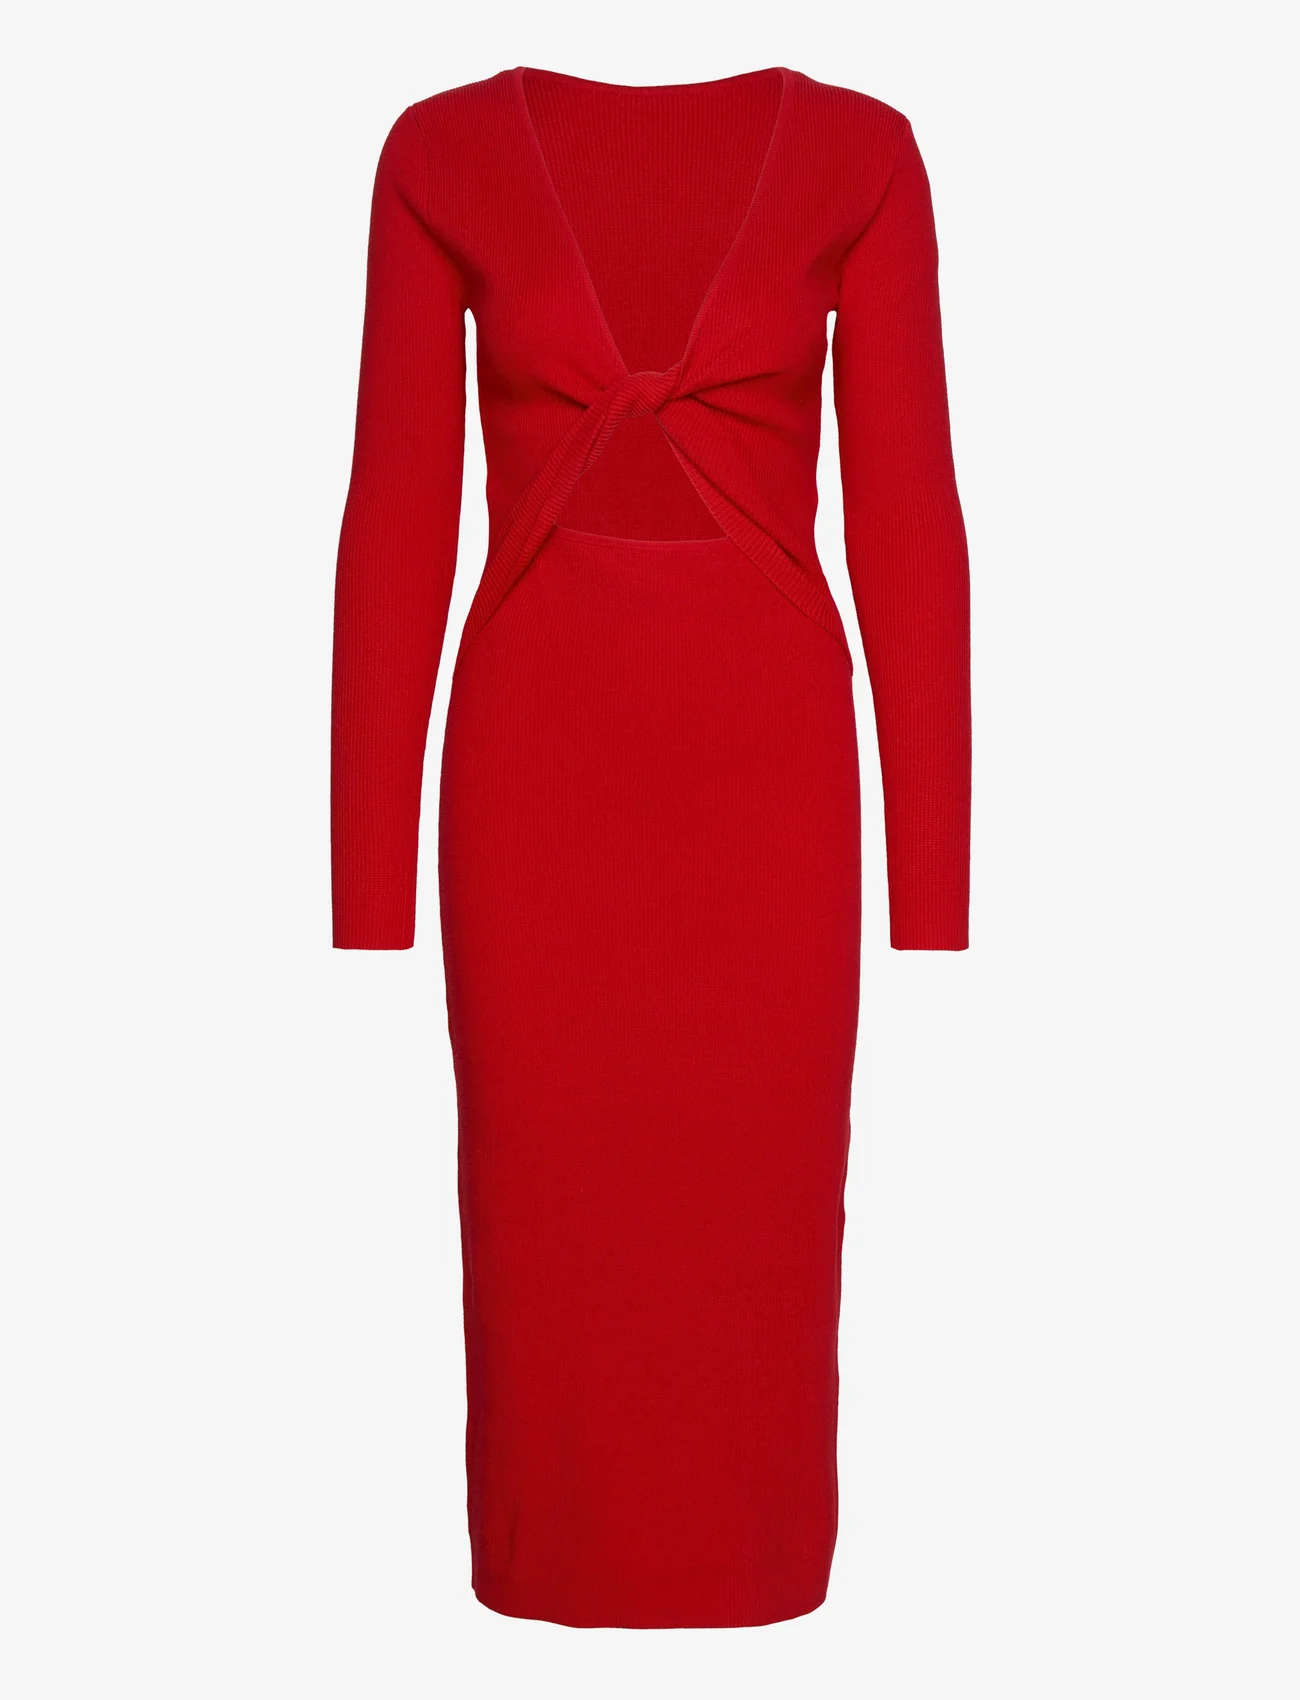 bzr - Lela Jenner dress - etuikleider - fiery red - 0